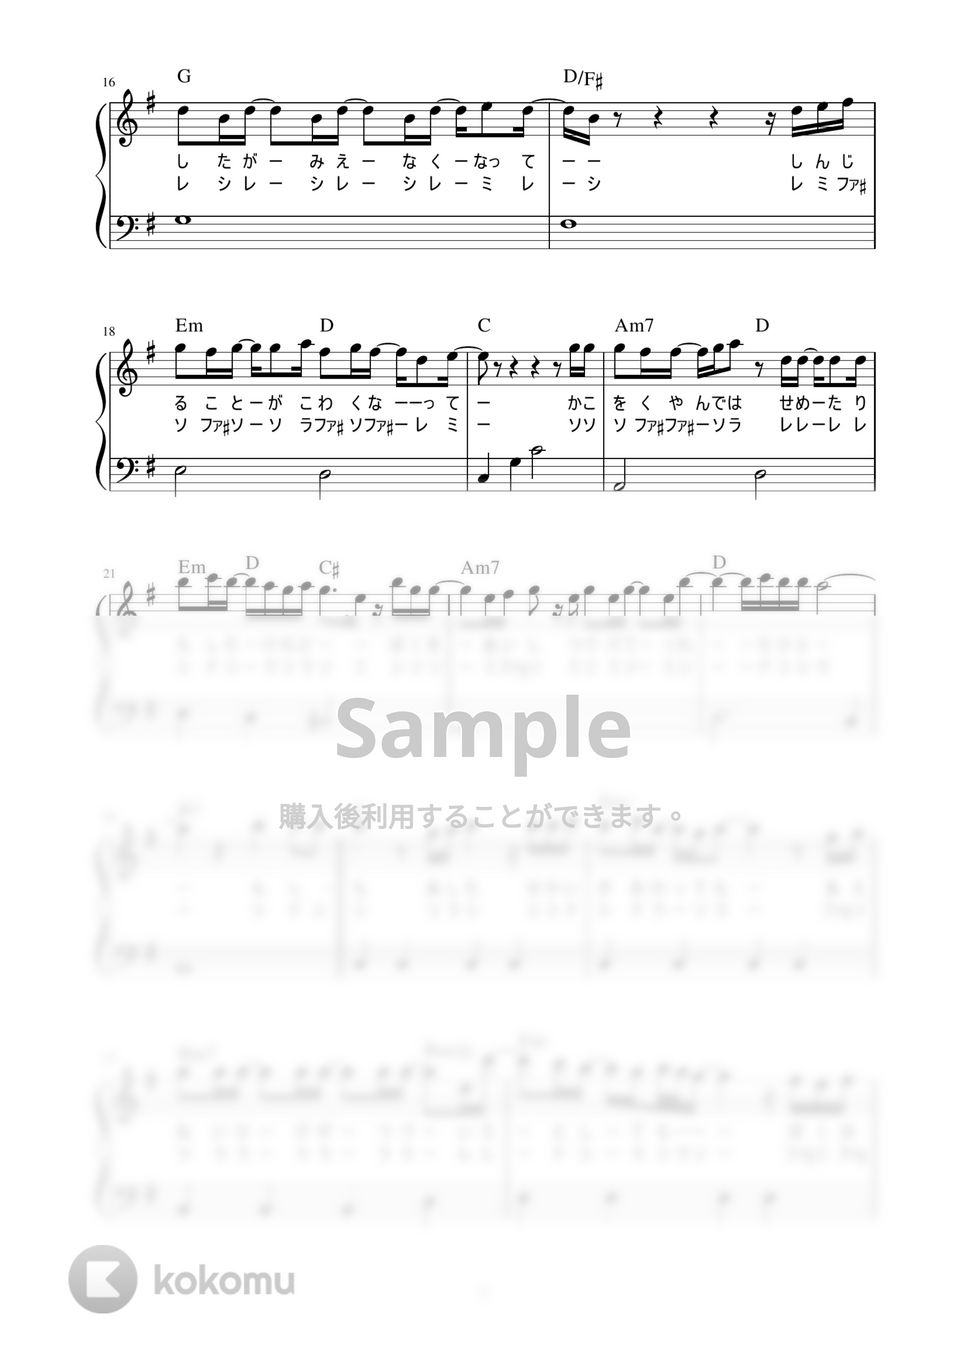 Uru - あなたがいることで (かんたん / 歌詞付き / ドレミ付き / 初心者) by piano.tokyo